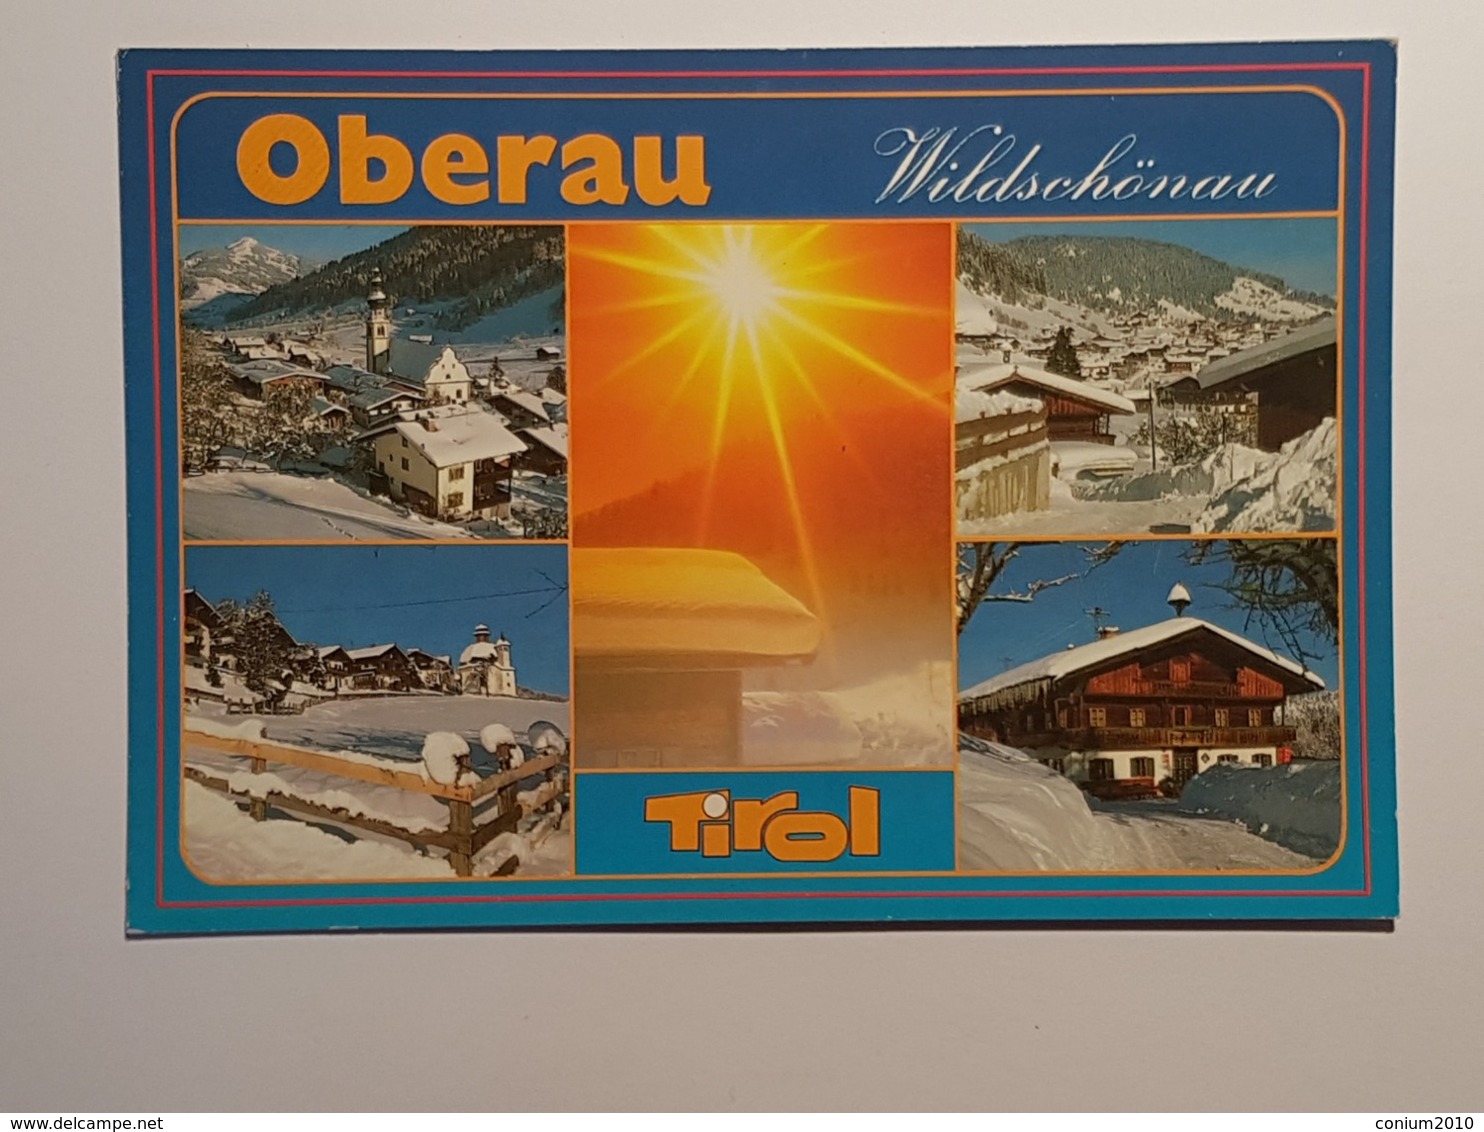 Oberau, Wildschönau (gelaufen , 1988); H30 - Wildschönau